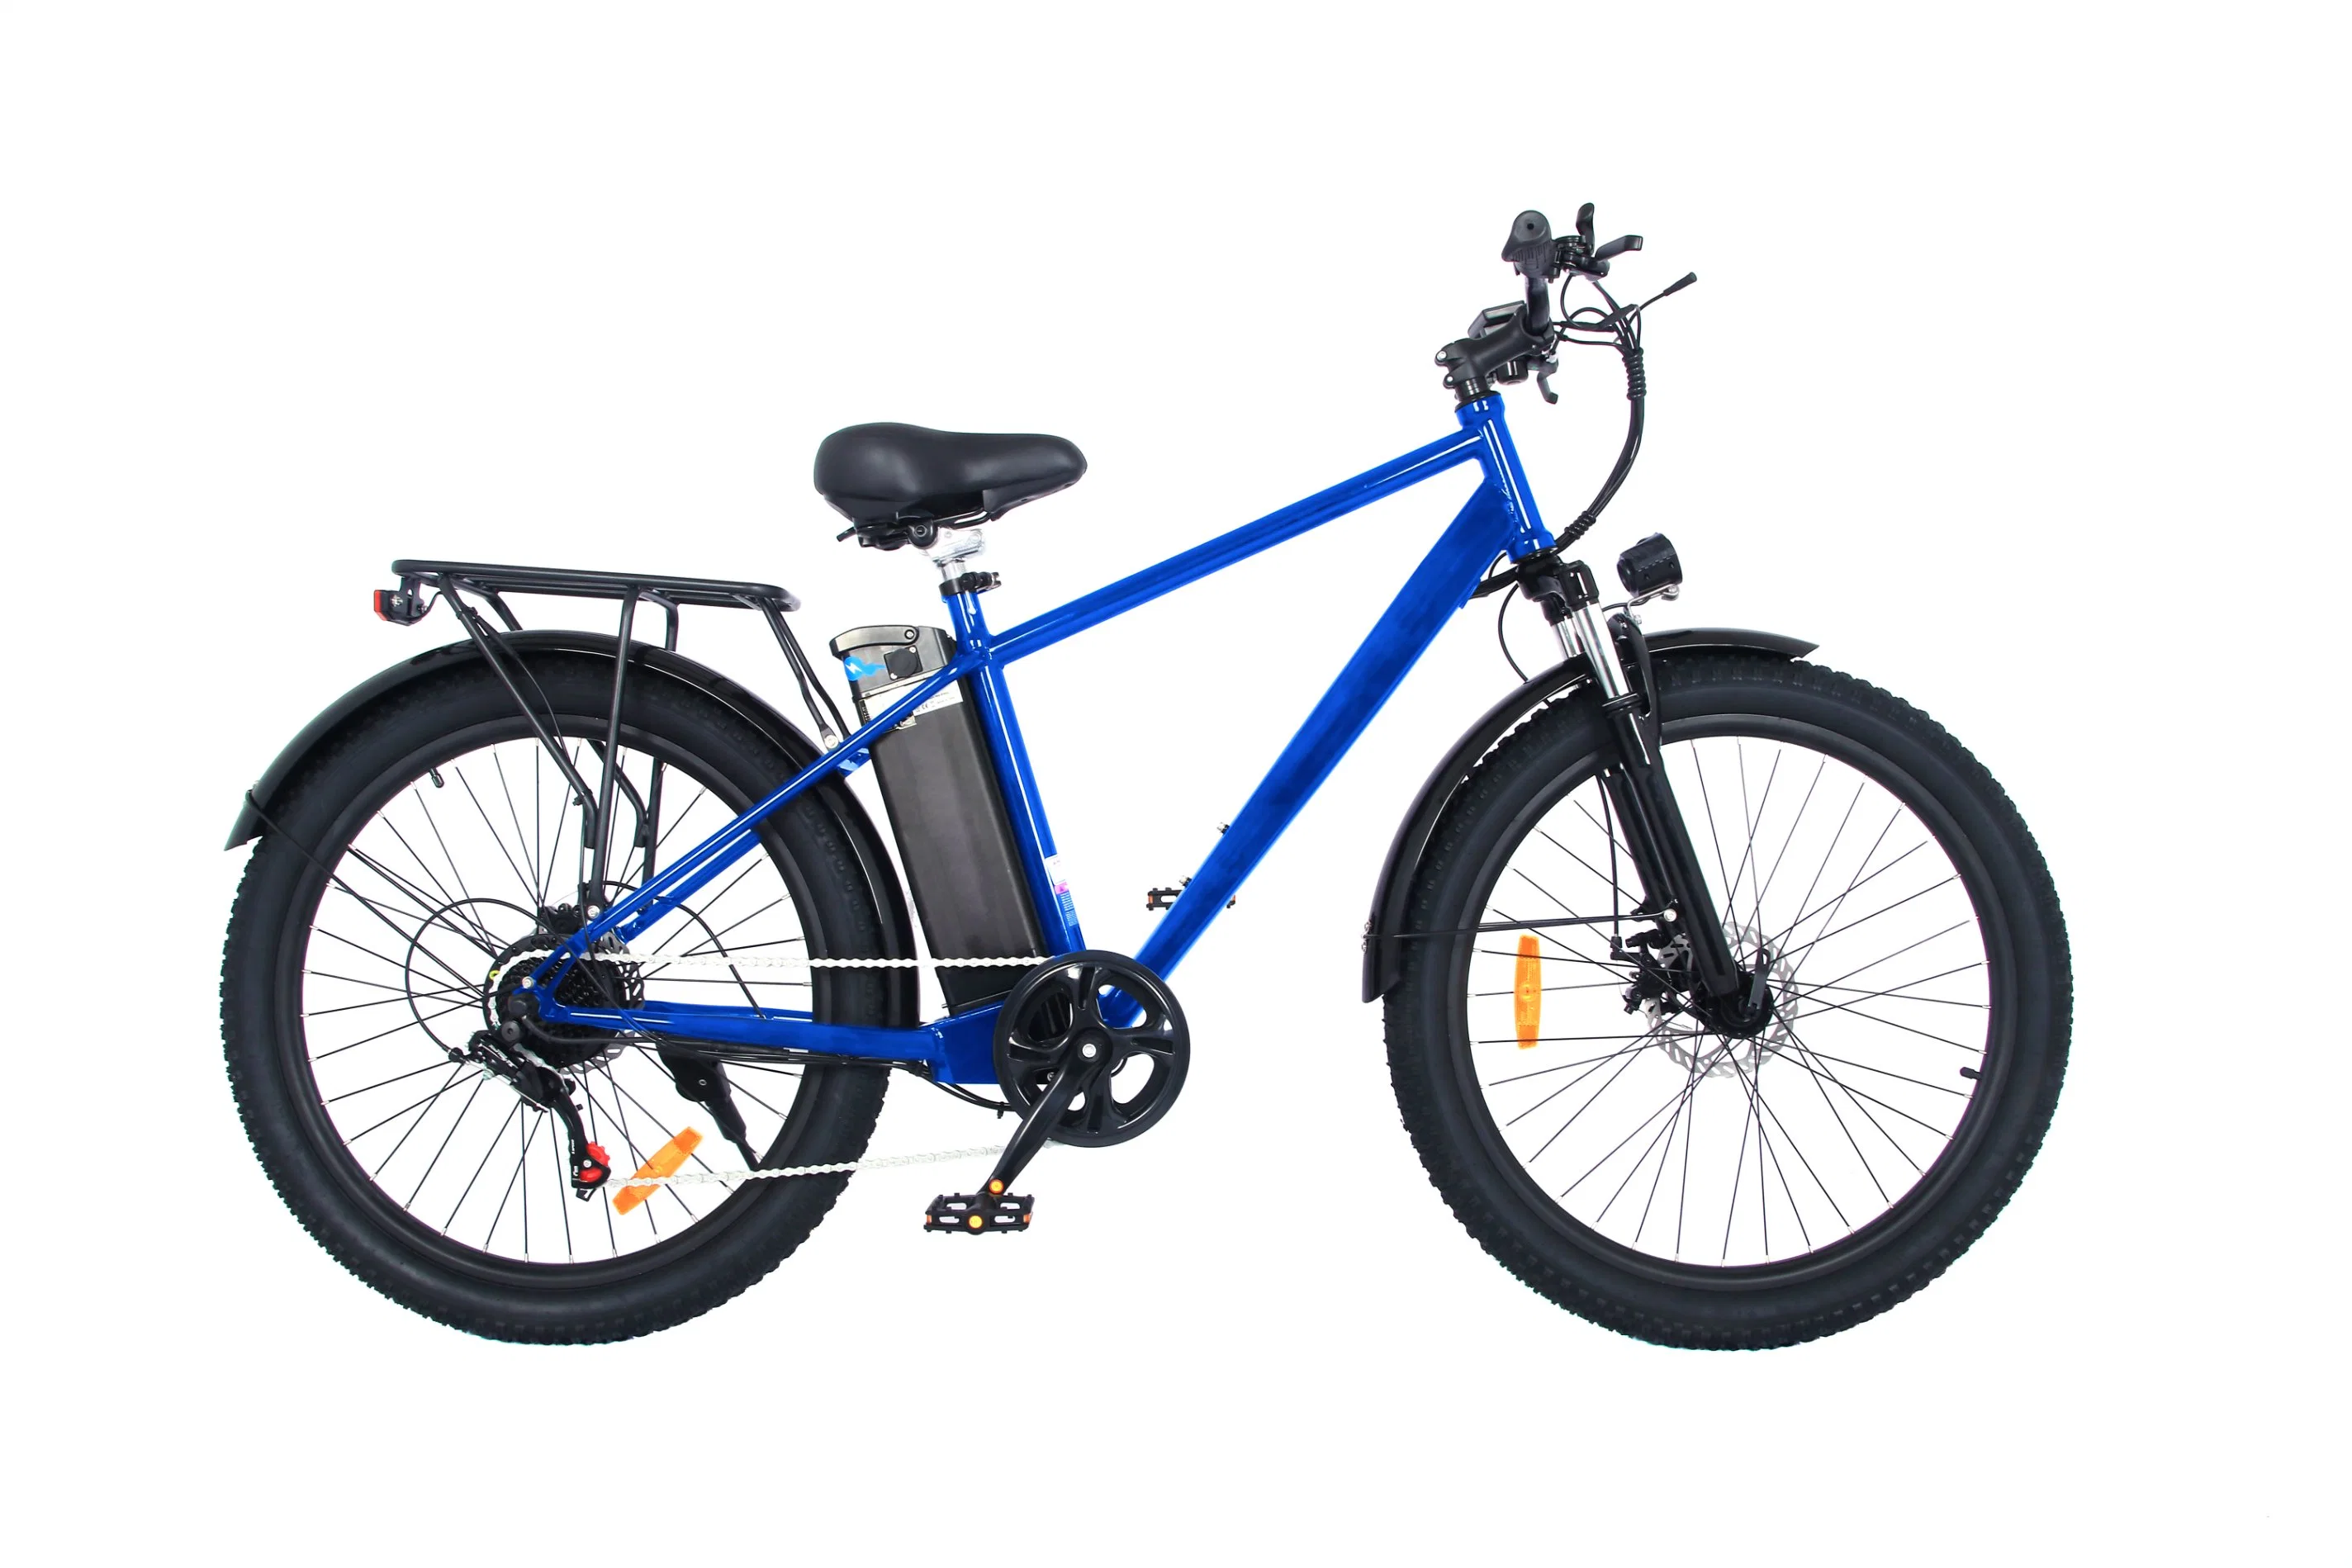 Eu Armazém em Stock Electric Bike 26 polegadas e-Bike 25km/H E-Bicycle Folding City eBike com CE